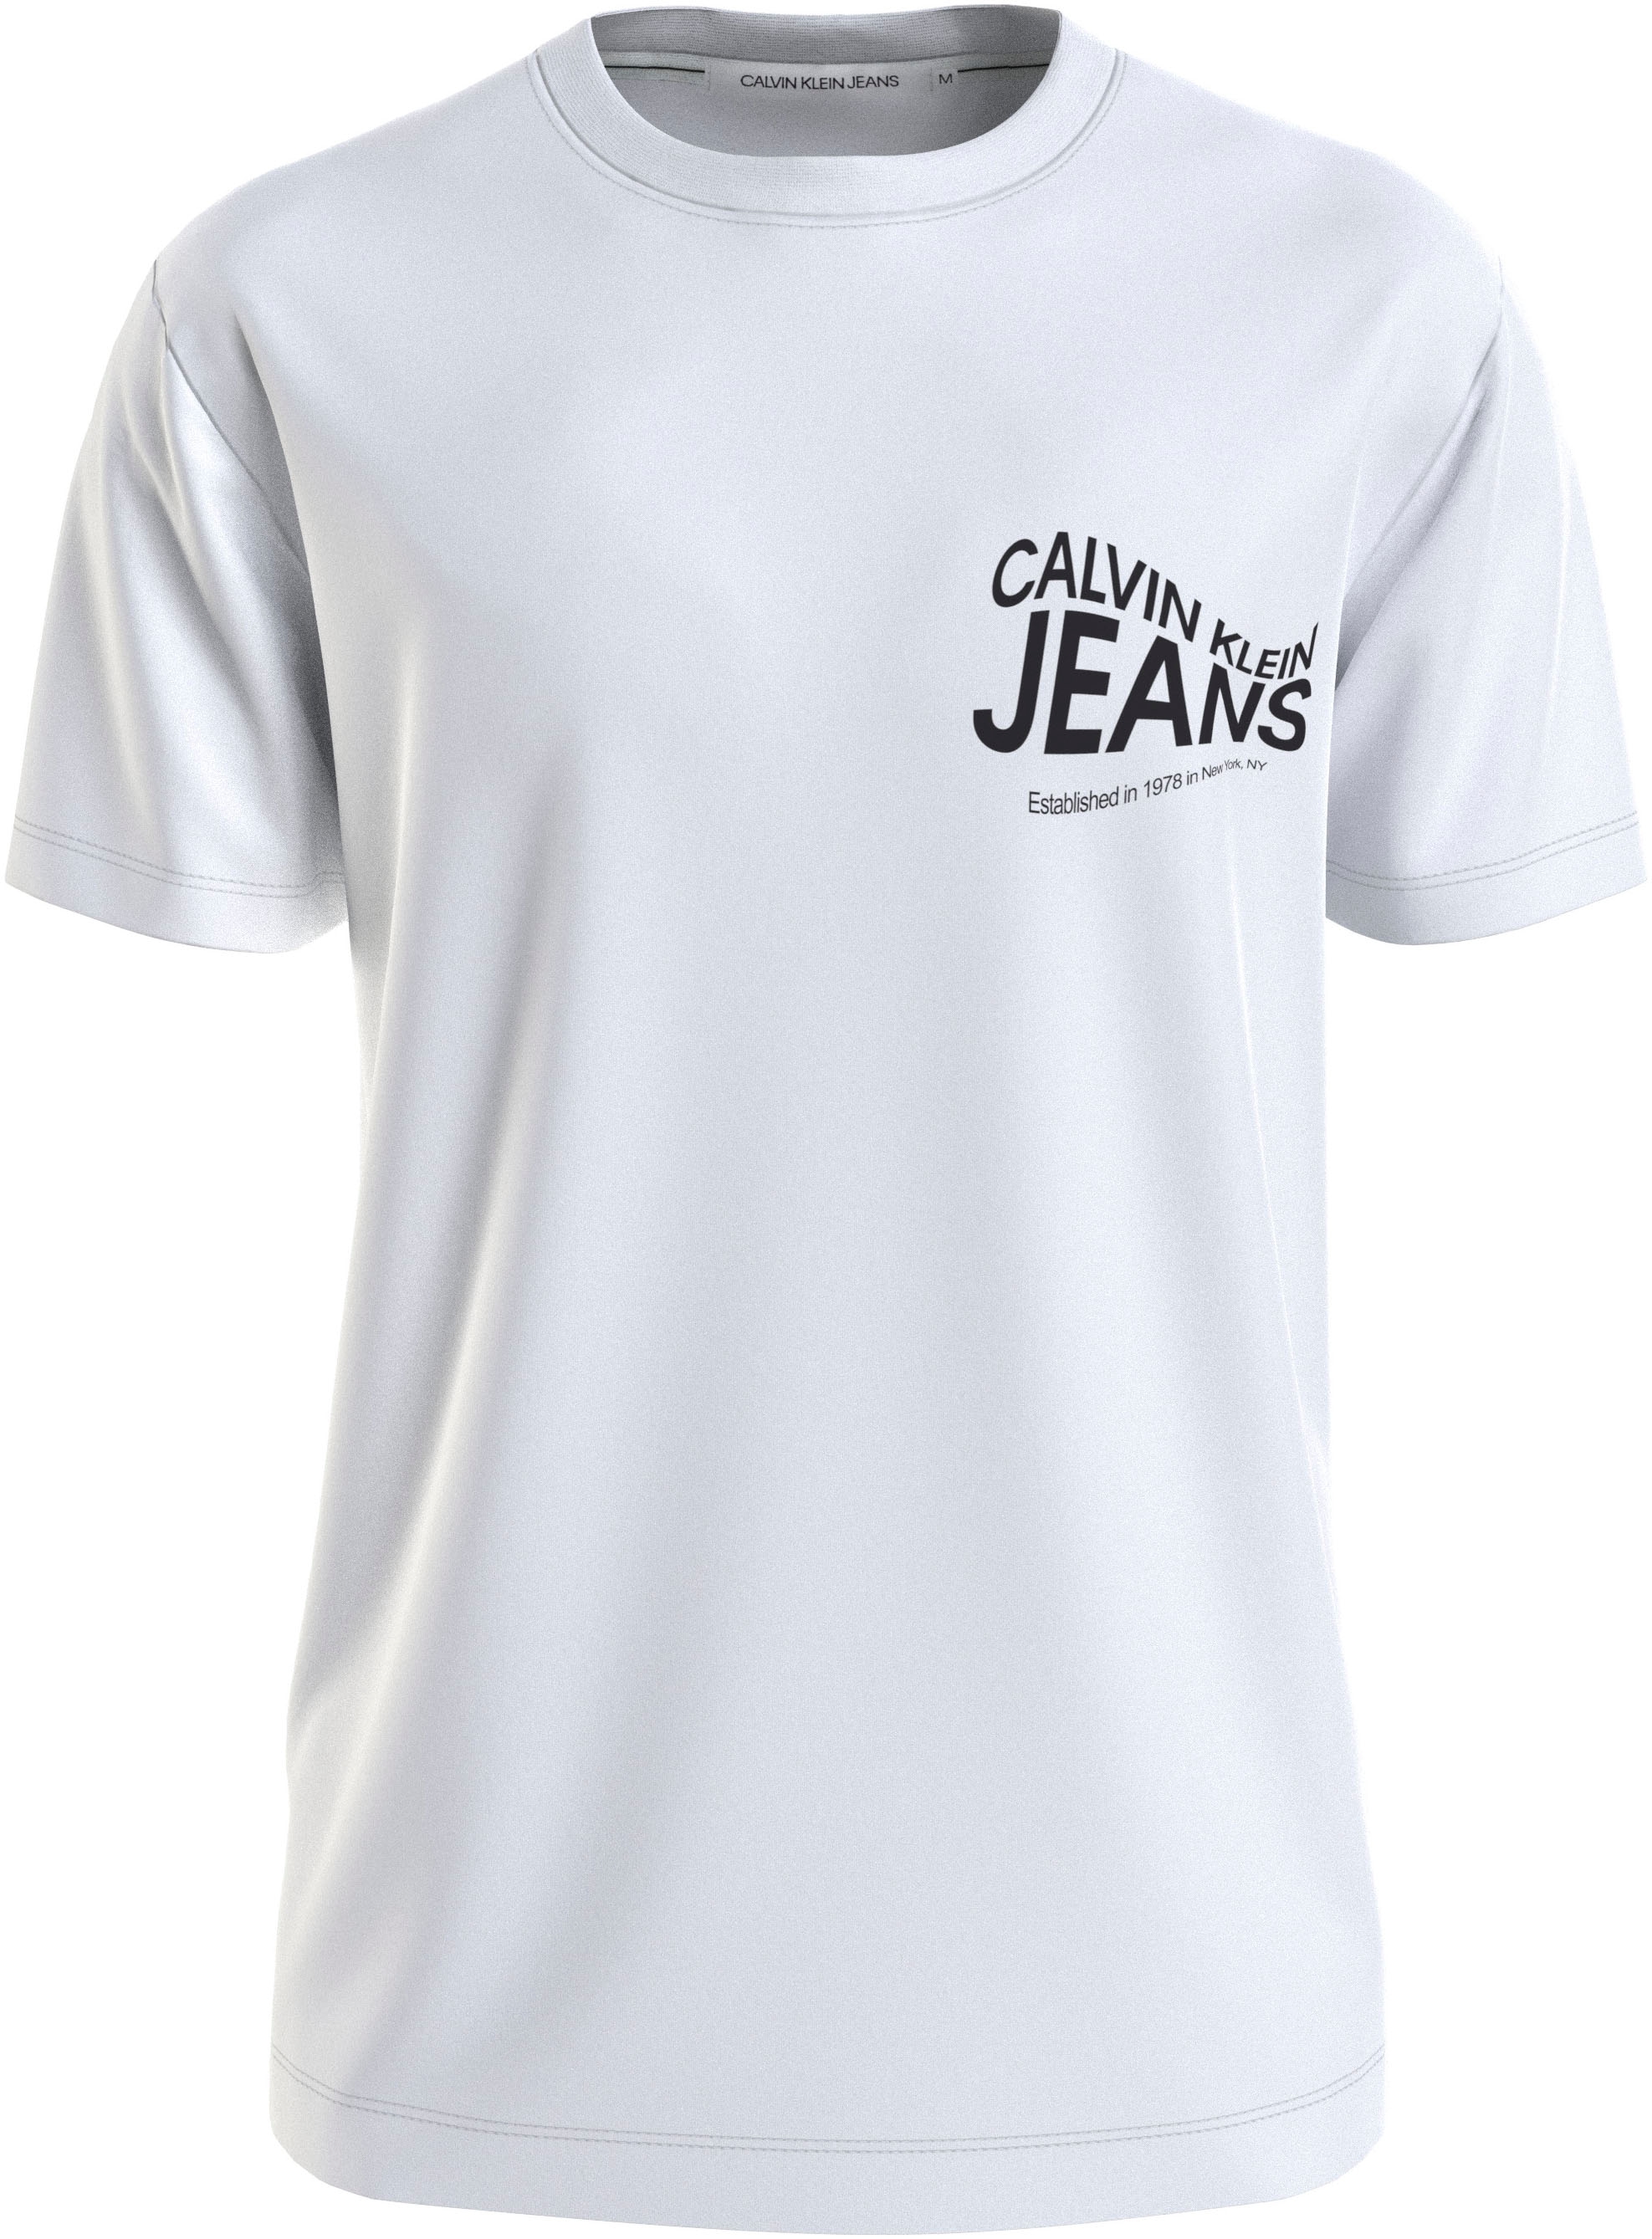 »FUTURE T-Shirt Calvin TEE« Jeans GRAPHIC kaufen Klein MOTION